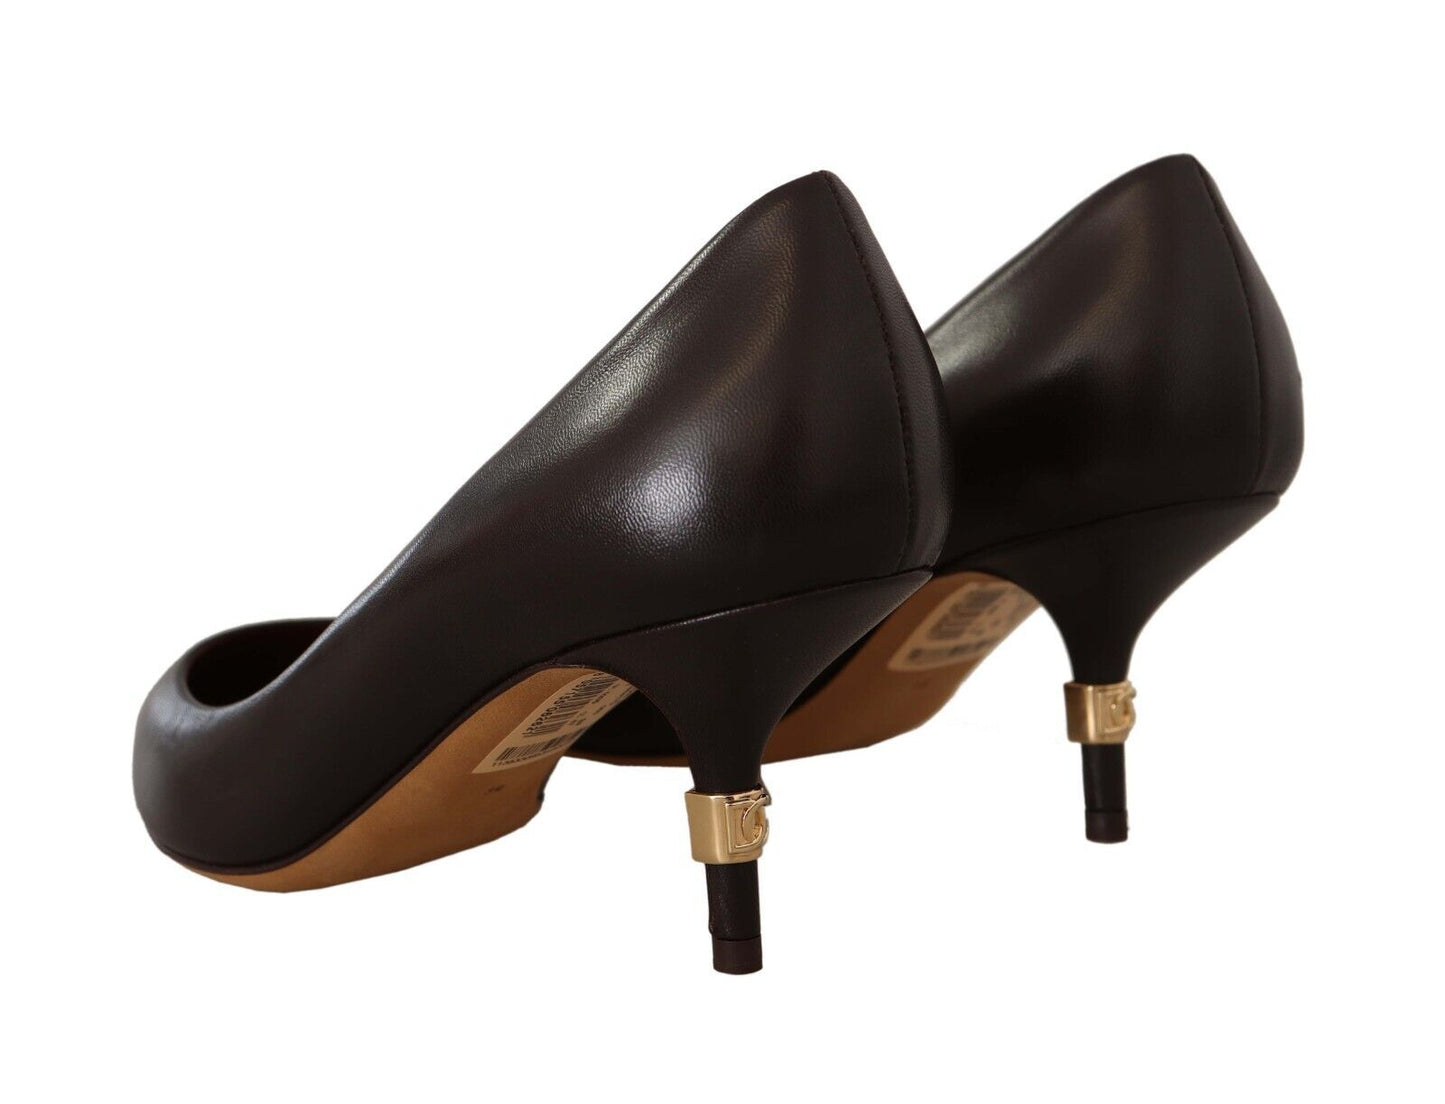 Elegant Brown Leather Heels Pumps